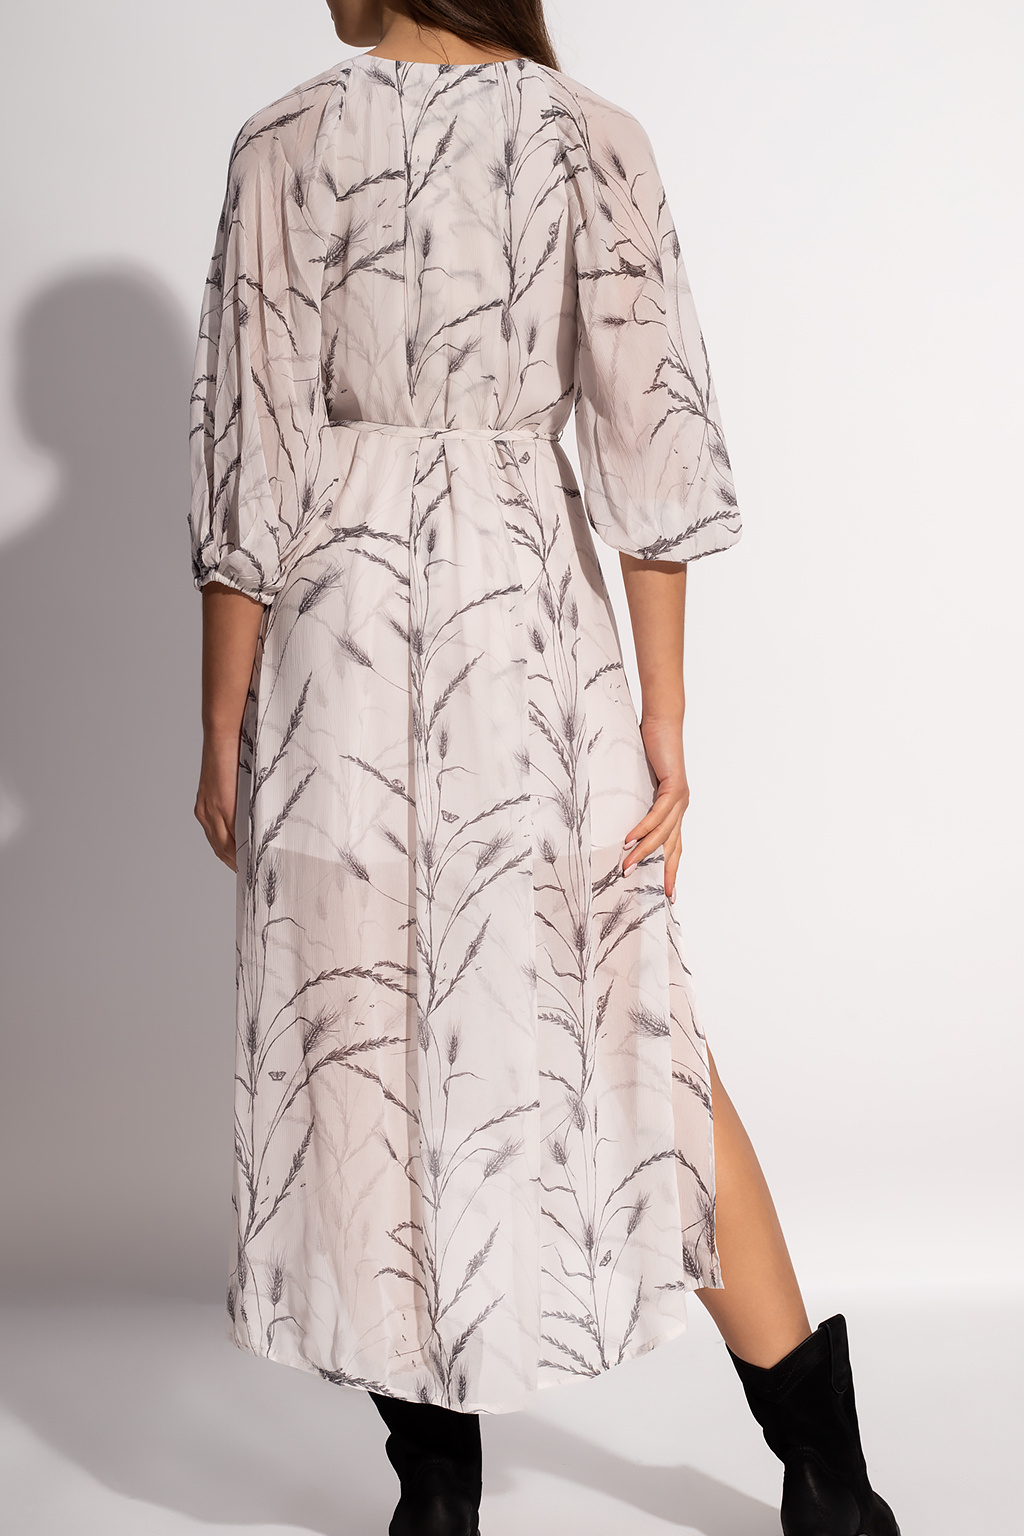 AllSaints ‘Joelle’ patterned dress